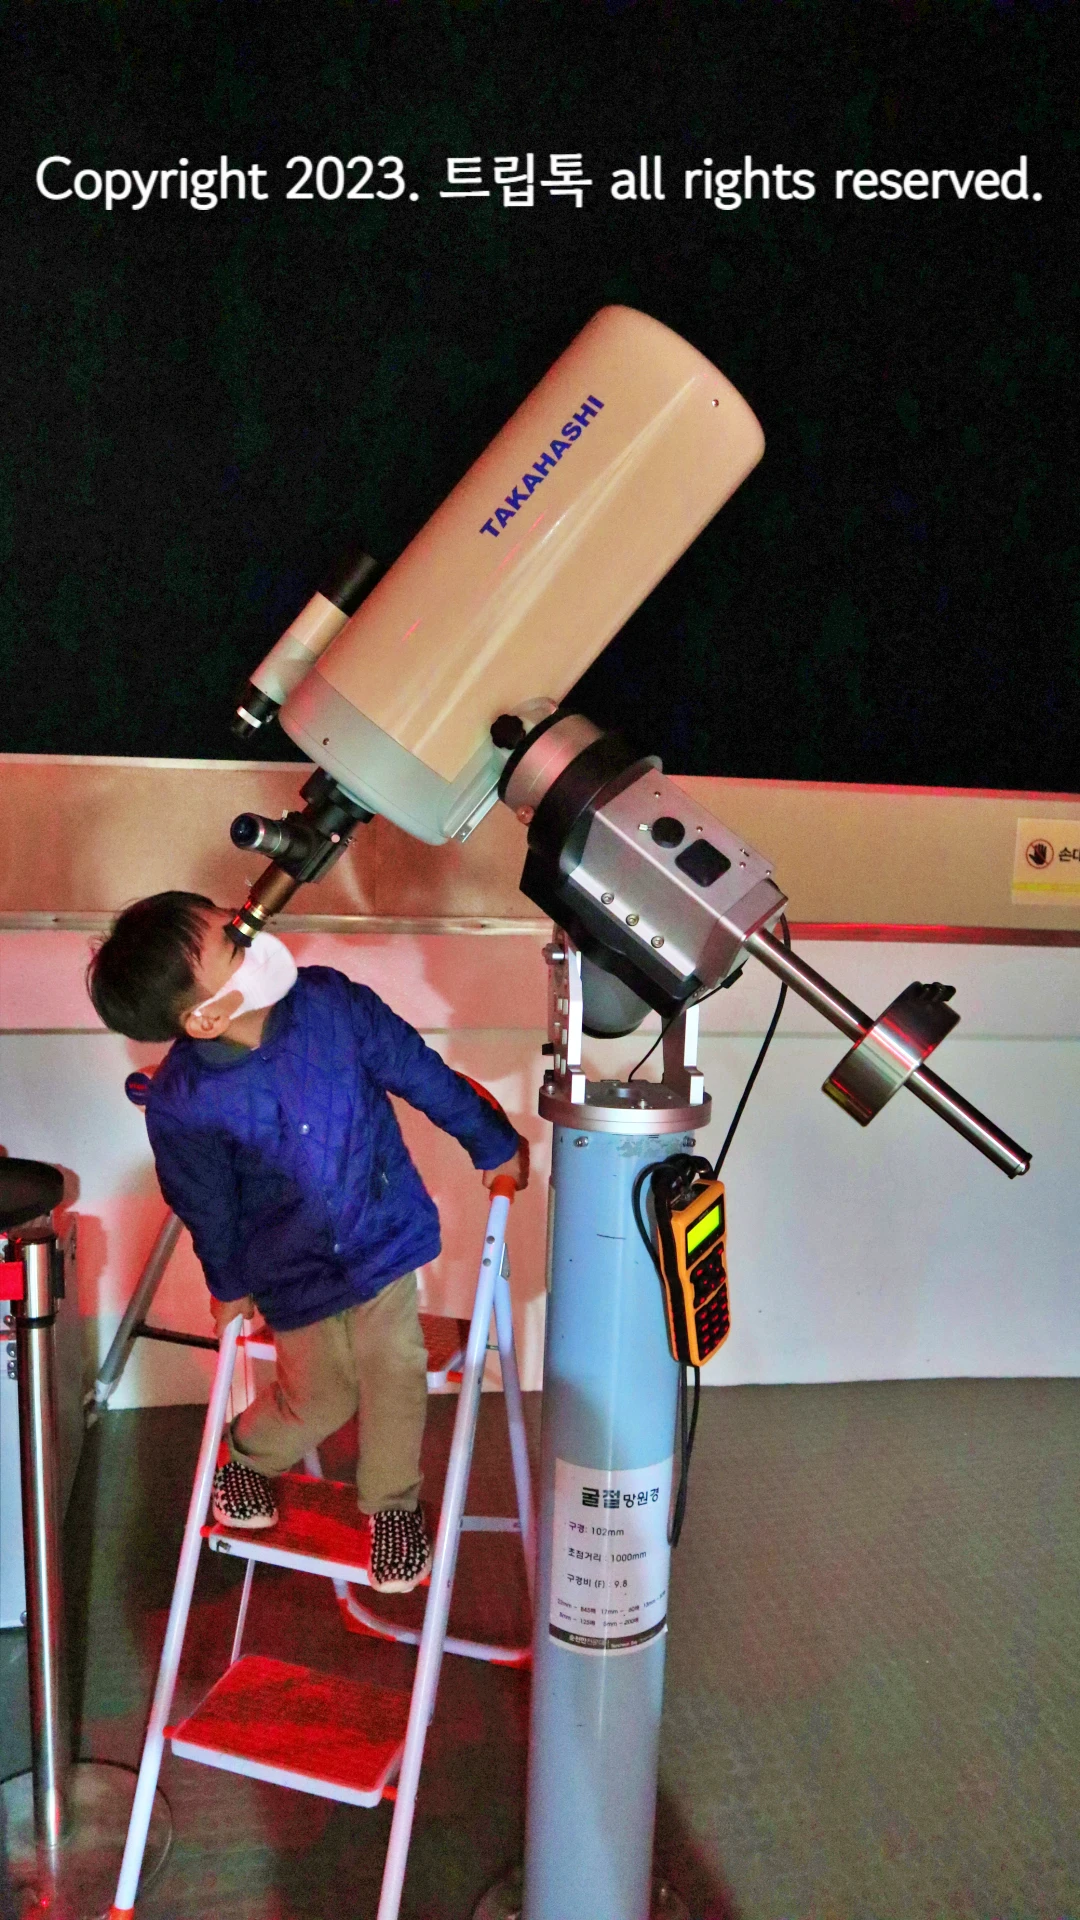 밤하늘을 전문 망원경으로 관측하는 파란옷을 입은 남자아이